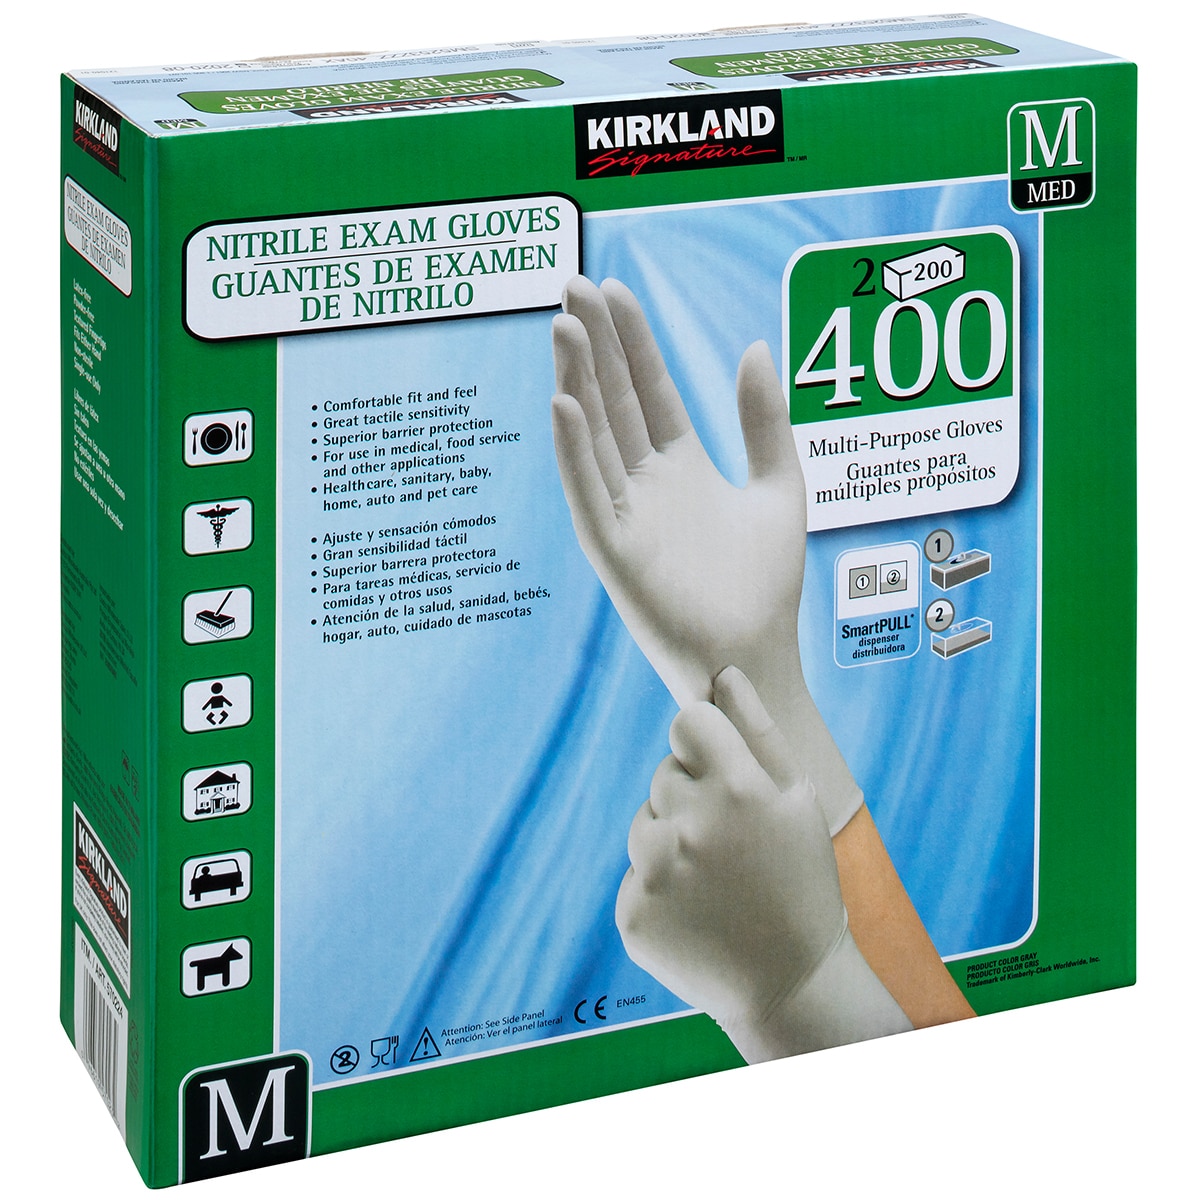 Kirkland Signature Nitrile Exam Gloves (Medium), 400 Count | lupon.gov.ph